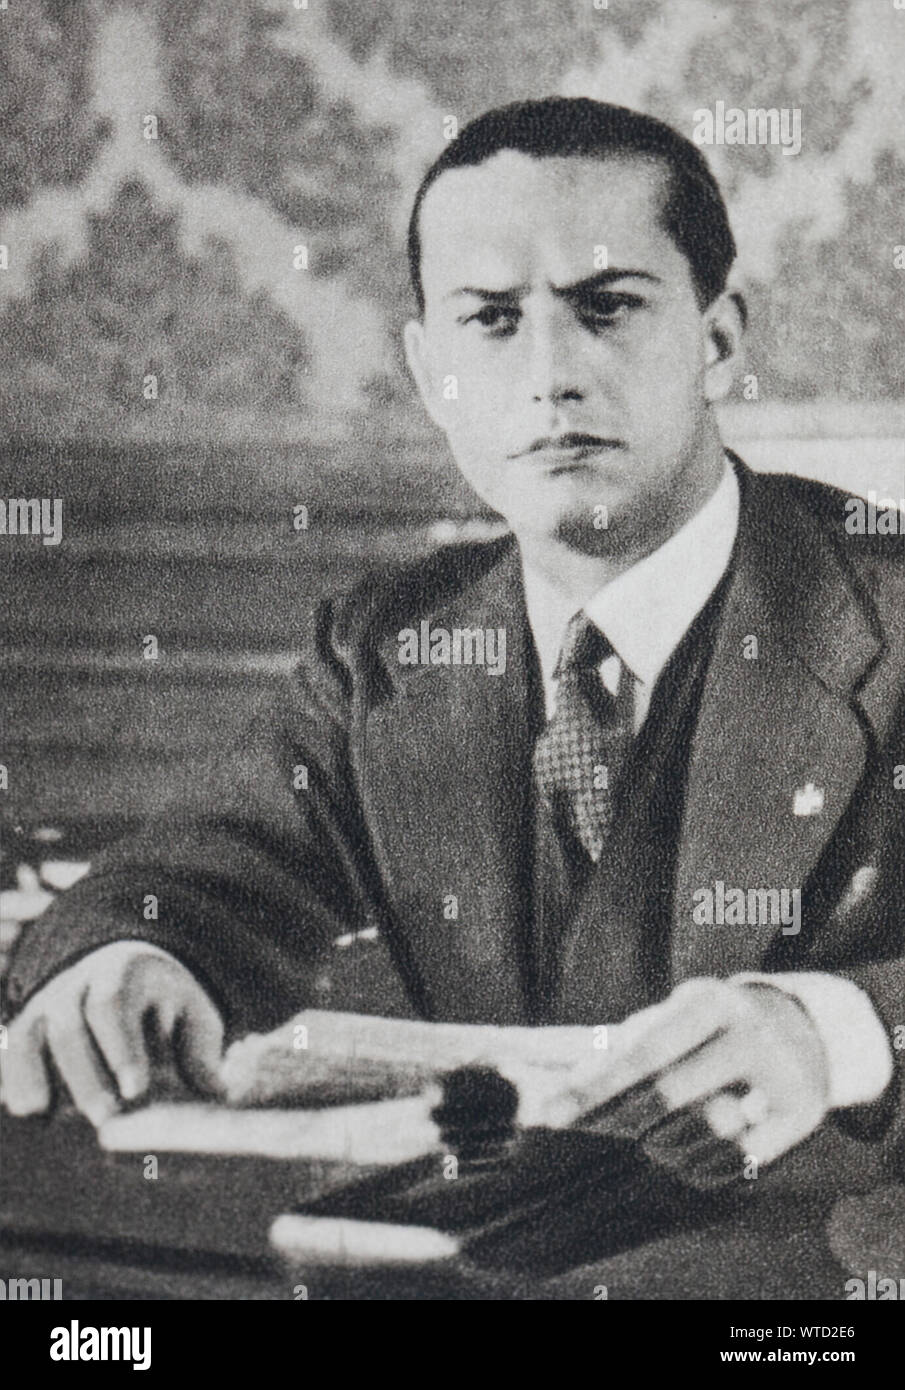 Count Galeazzo Ciano (1903 - 1944) était un homme politique italien qui a servi comme Ministre des affaires étrangères dans le gouvernement de son beau-père, Benito Mussolini, Banque D'Images